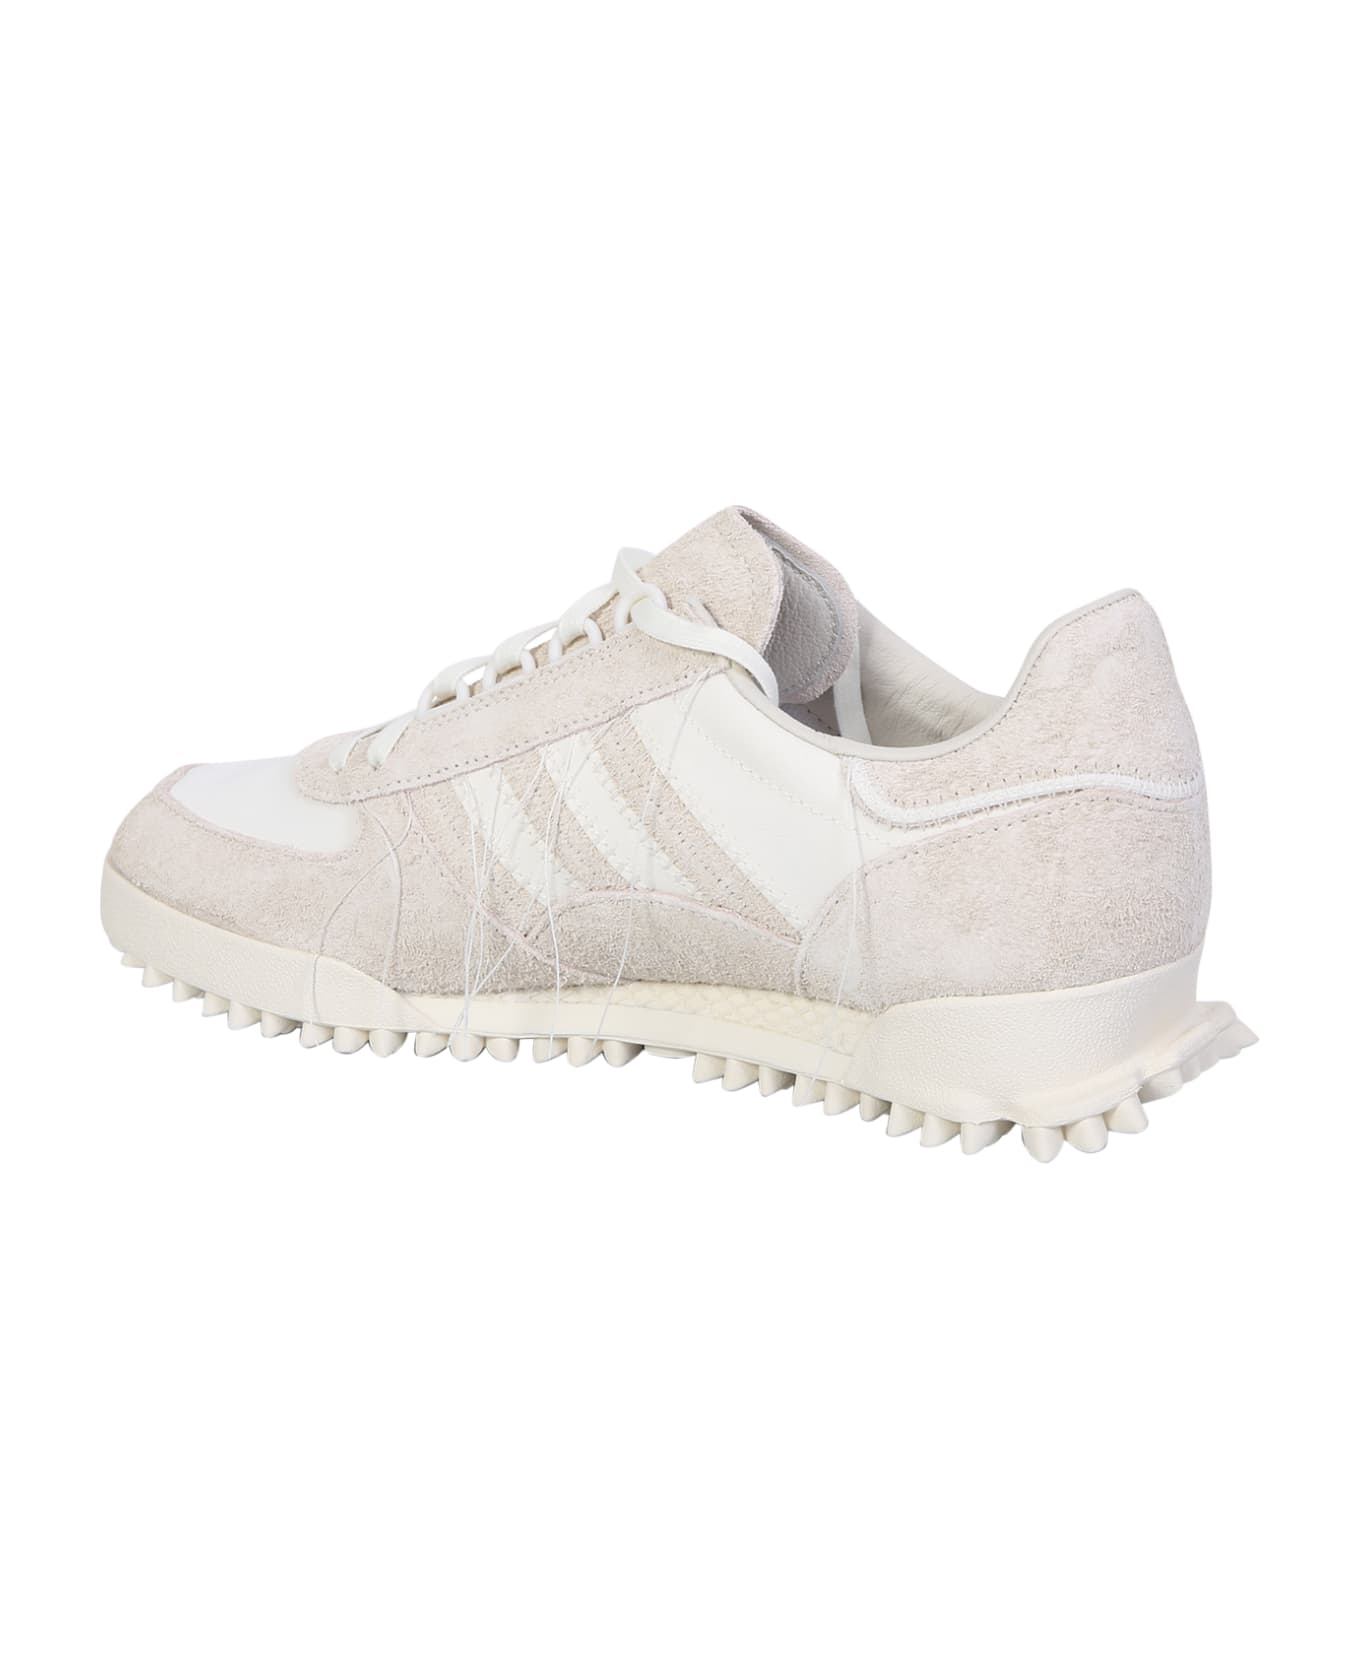 Y-3 Marathon Tr Sneakers - White